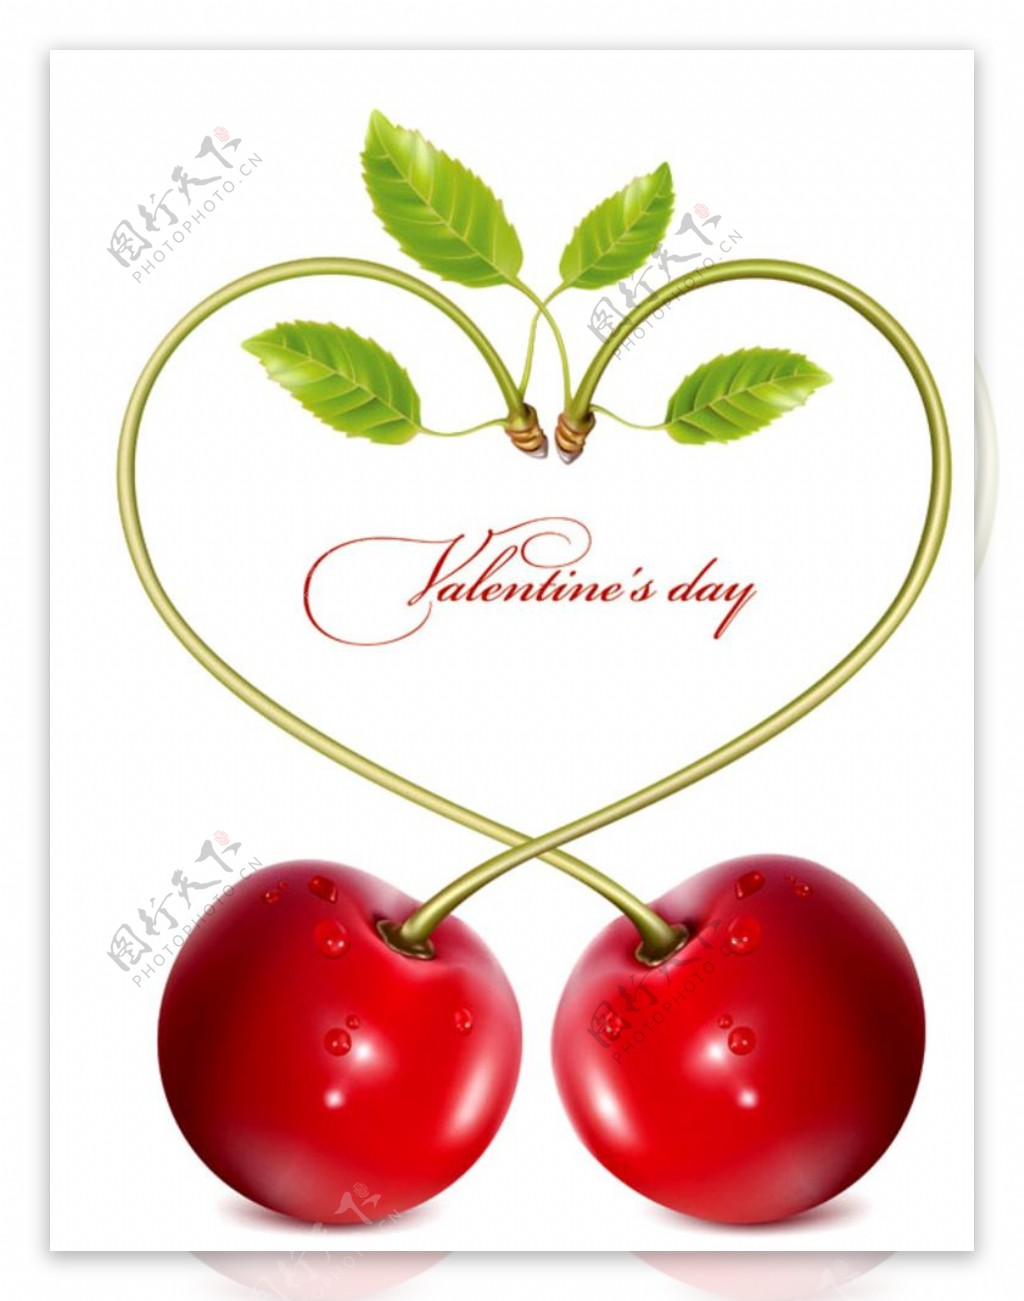 浪漫心形苹果和樱桃矢量素材